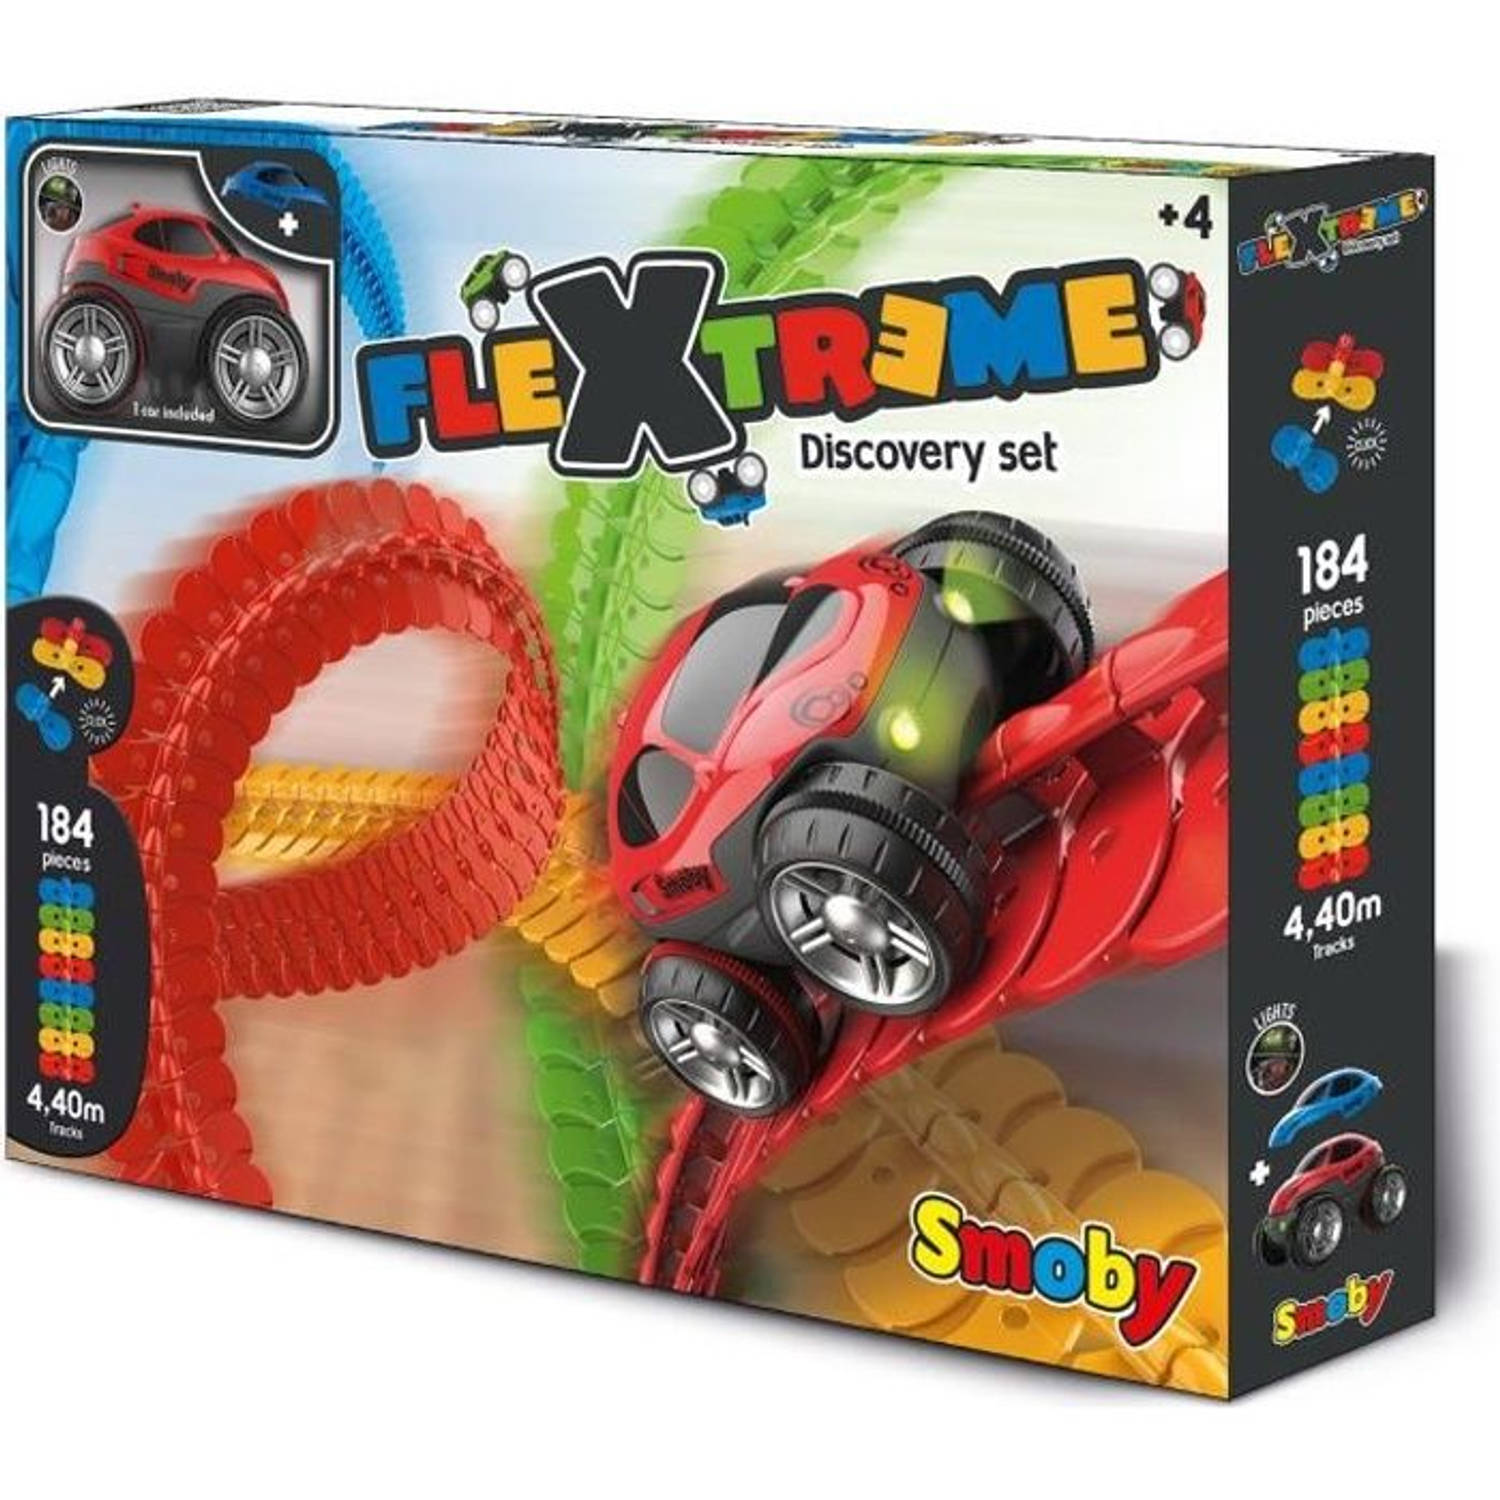 Smoby Flextreme Discovery Set Racebaan Inclusief Raceauto Kunststof